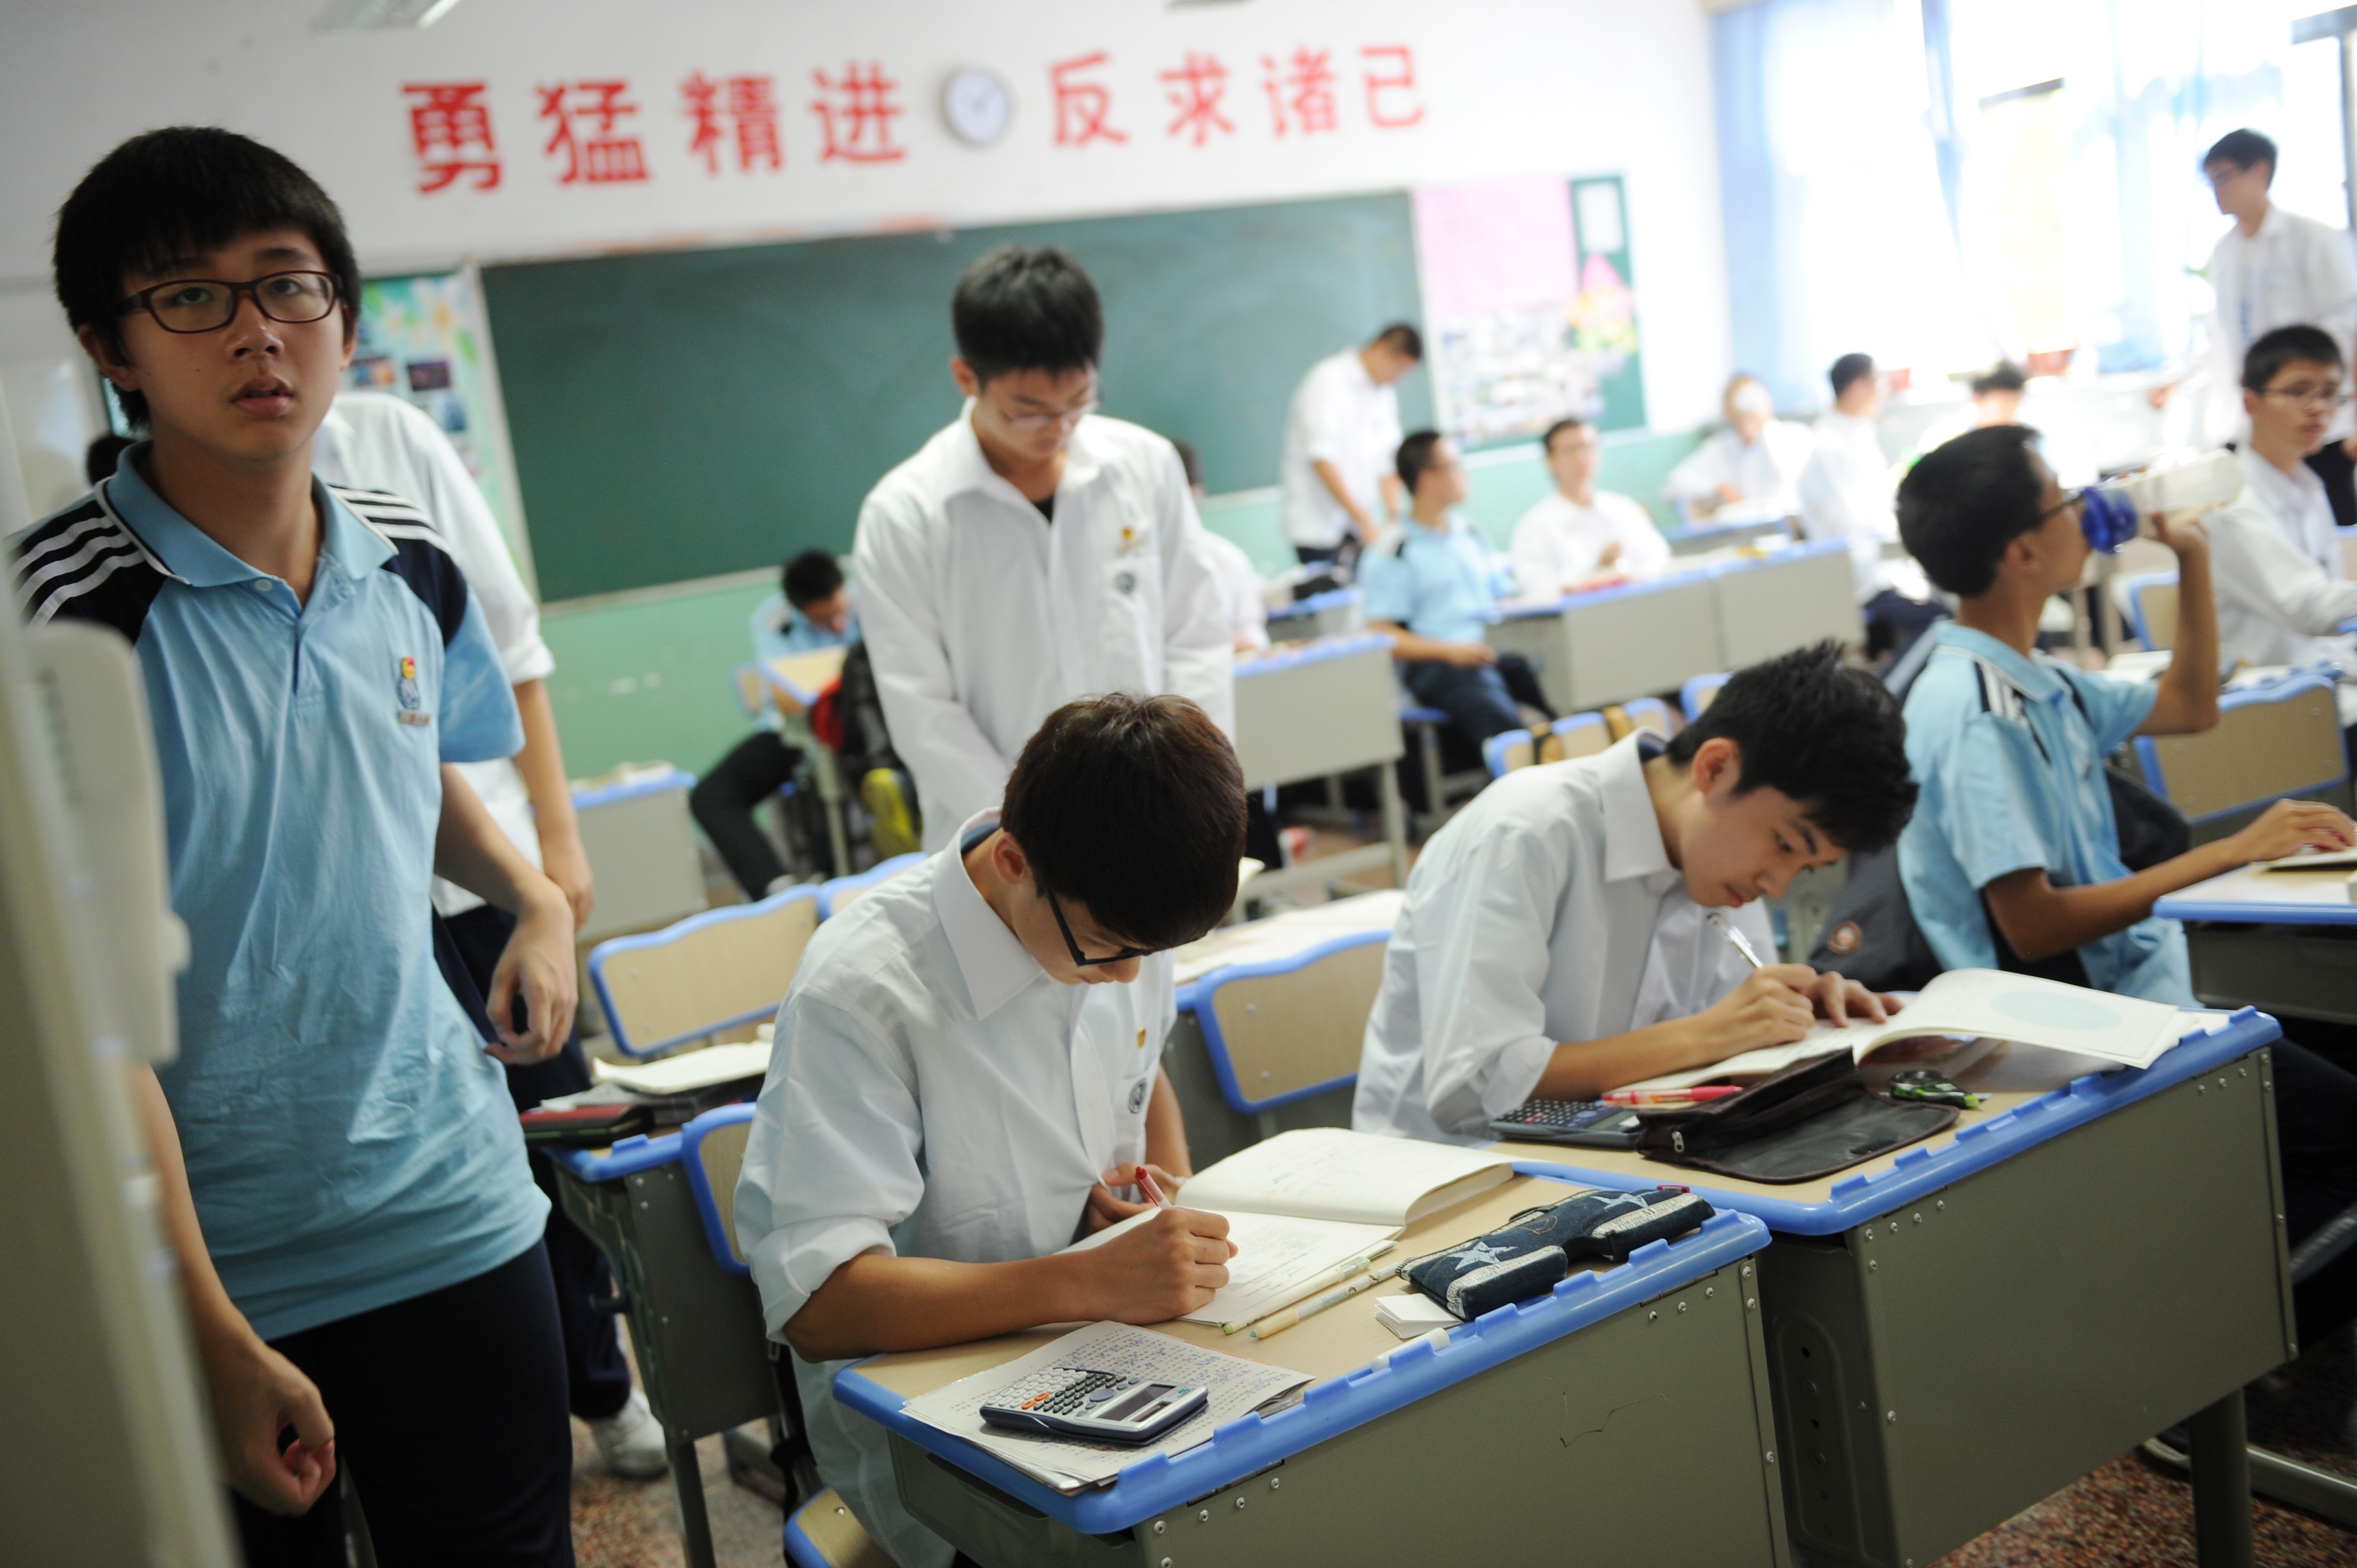 В школе китайский изучает 60 учащихся